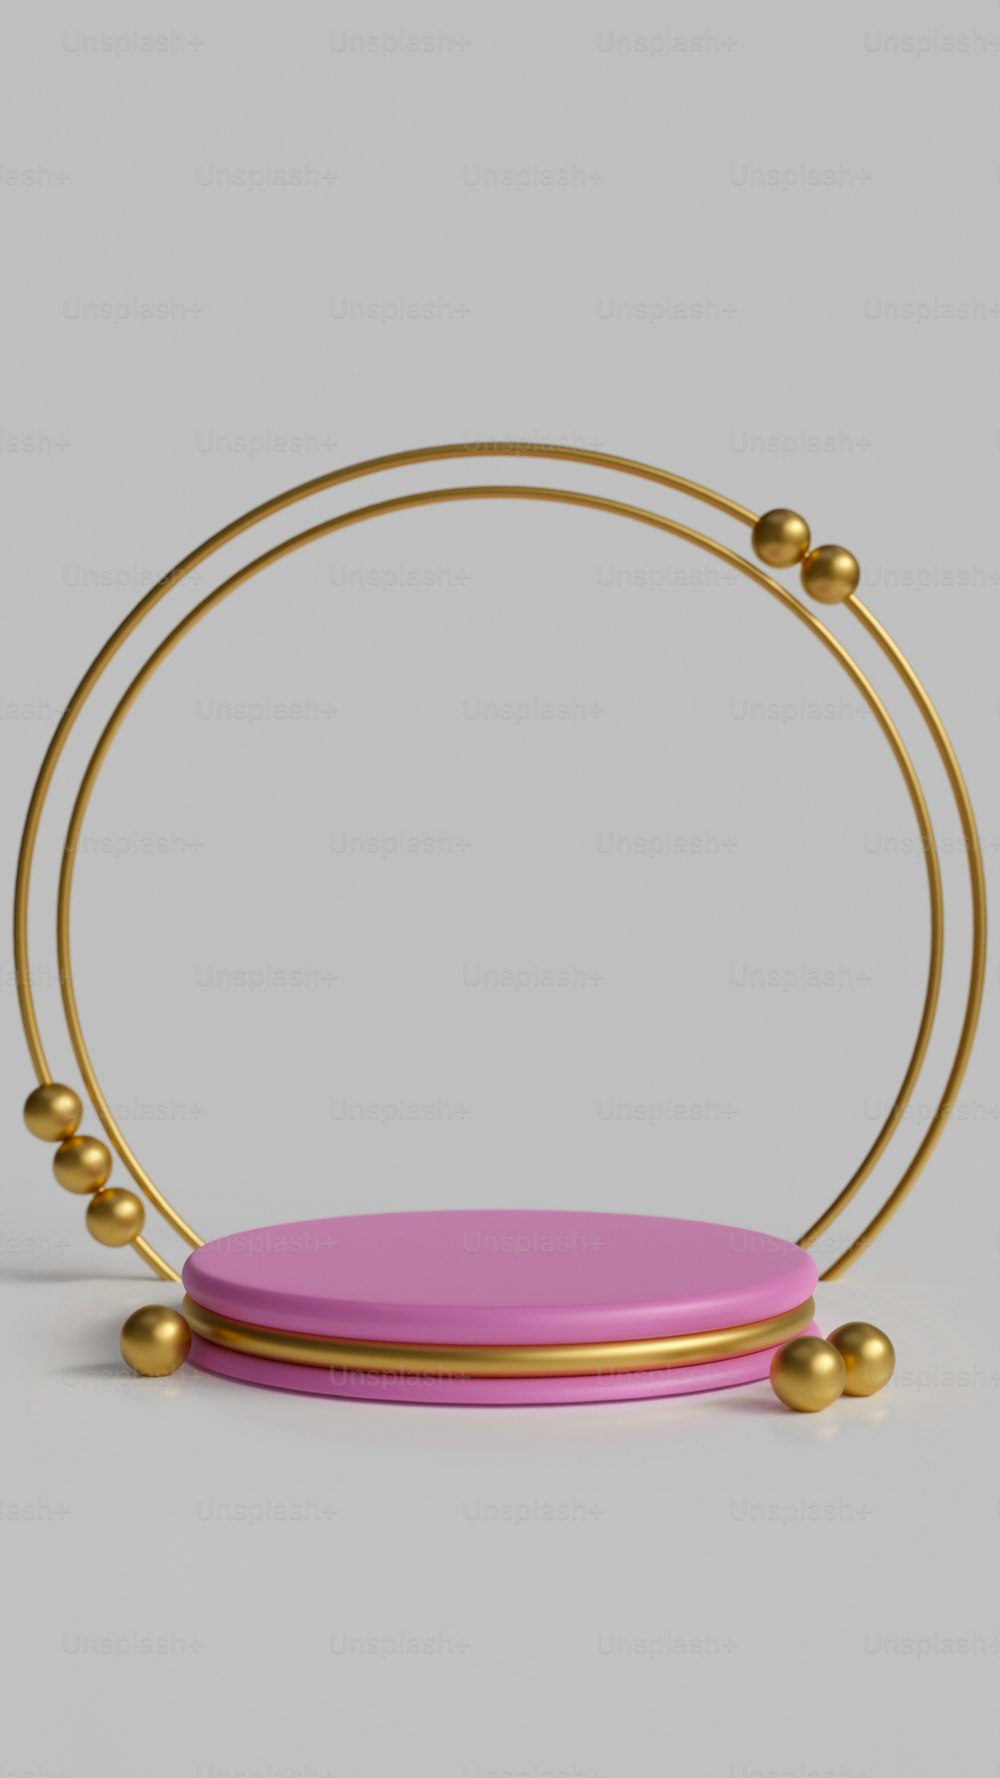 Un objeto rosa con bolas de oro a su alrededor